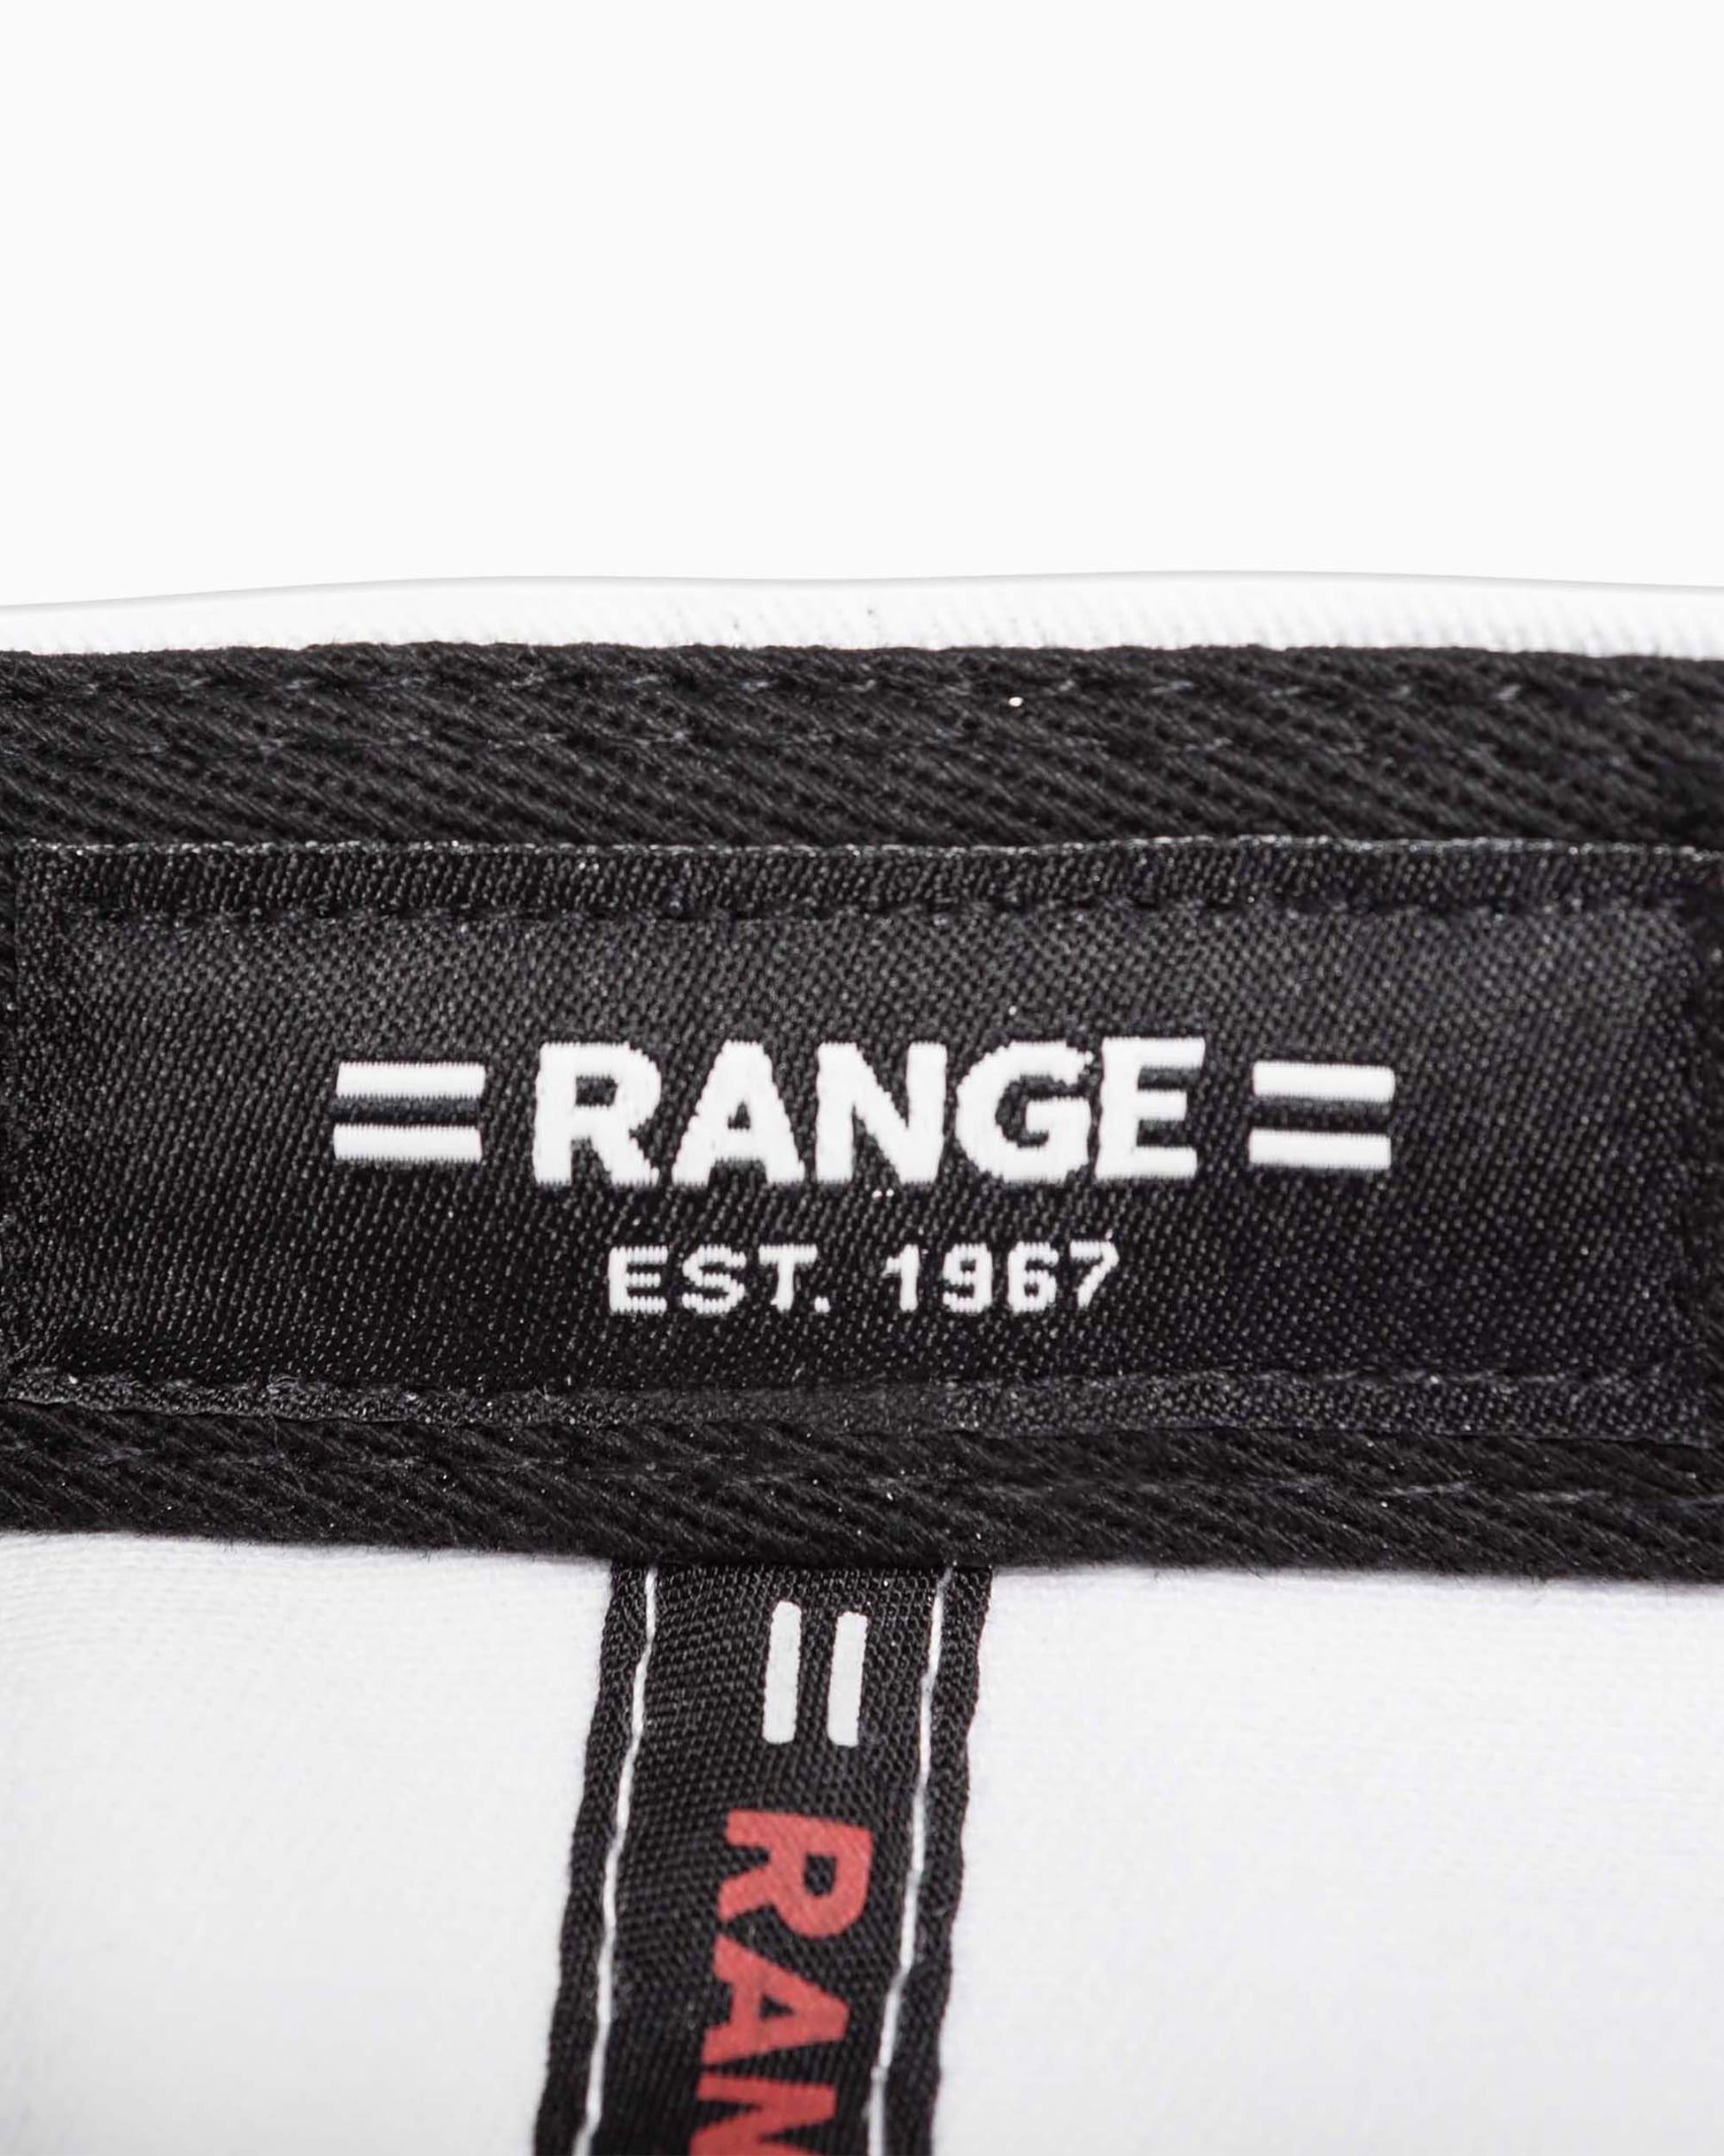 close up of range tag